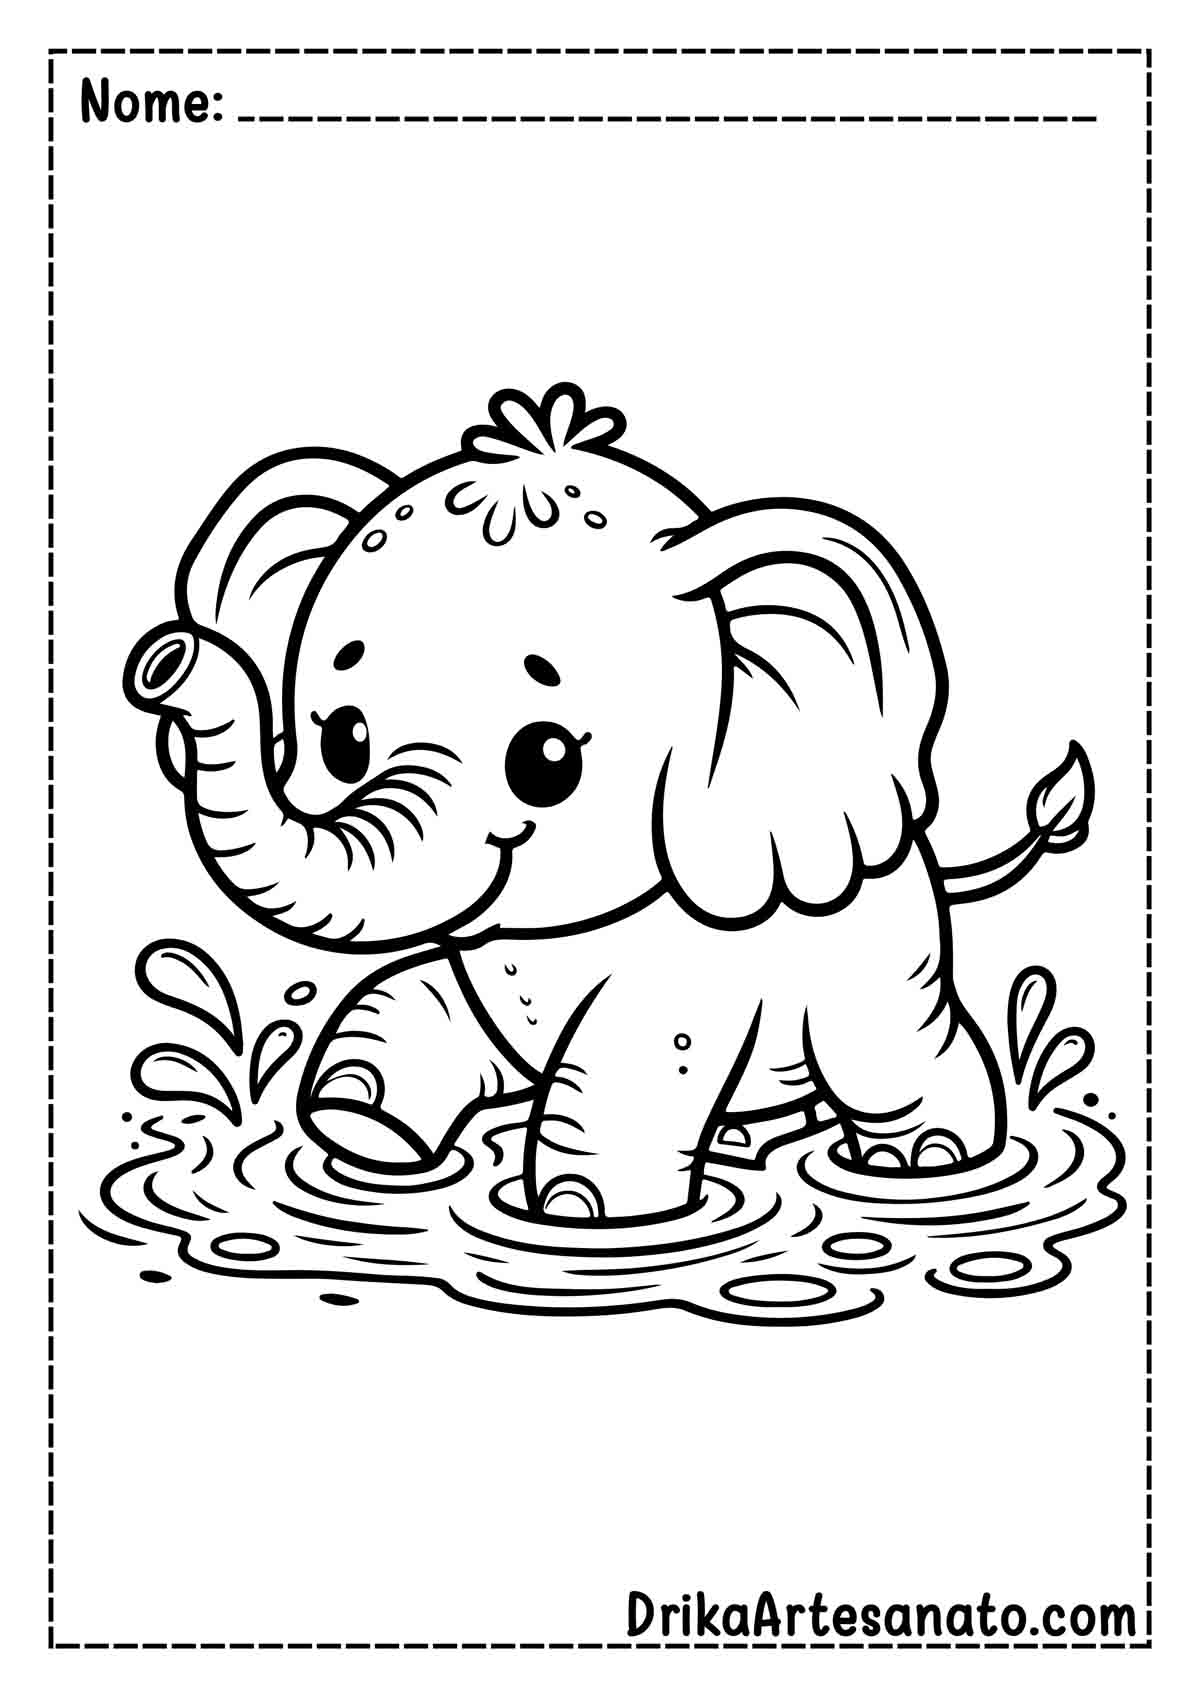 Desenho de Elefante Infantil para Pintar